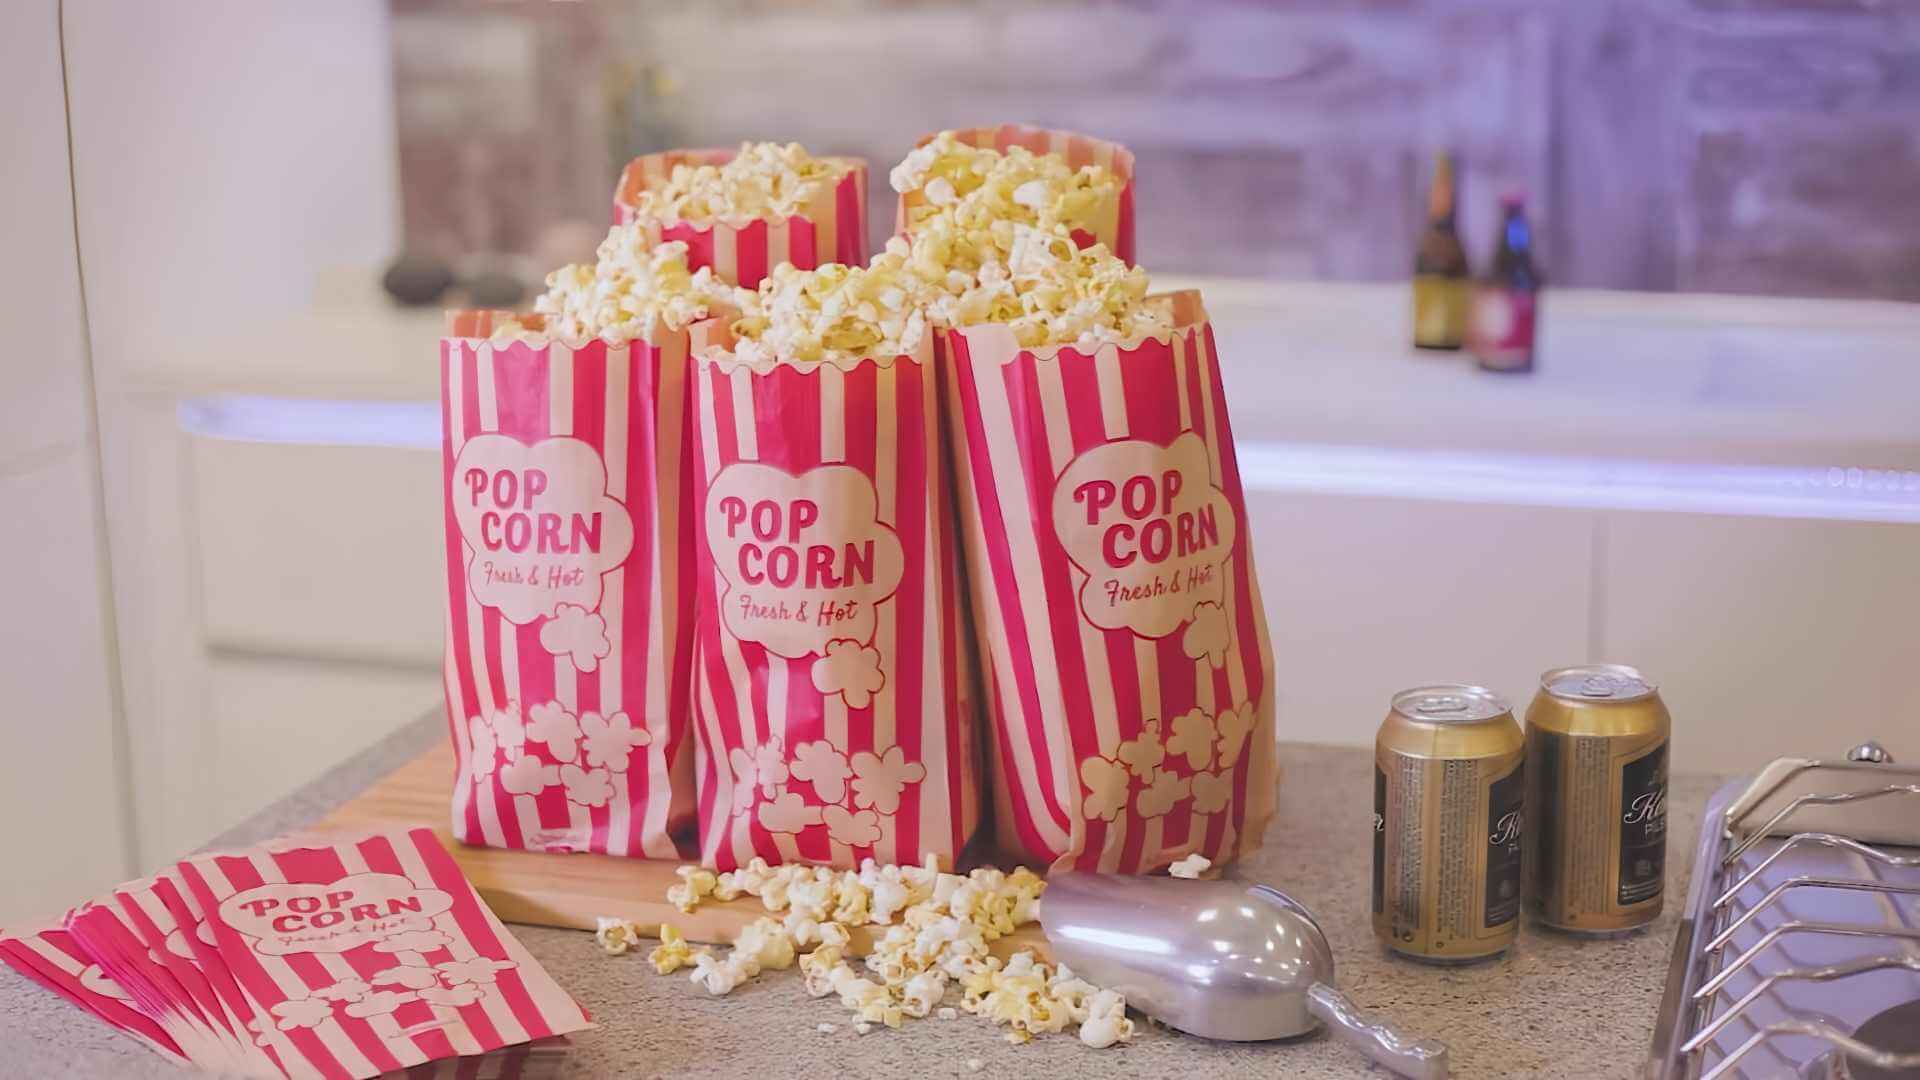 sacchetti per popcorn sfusi - introduzione